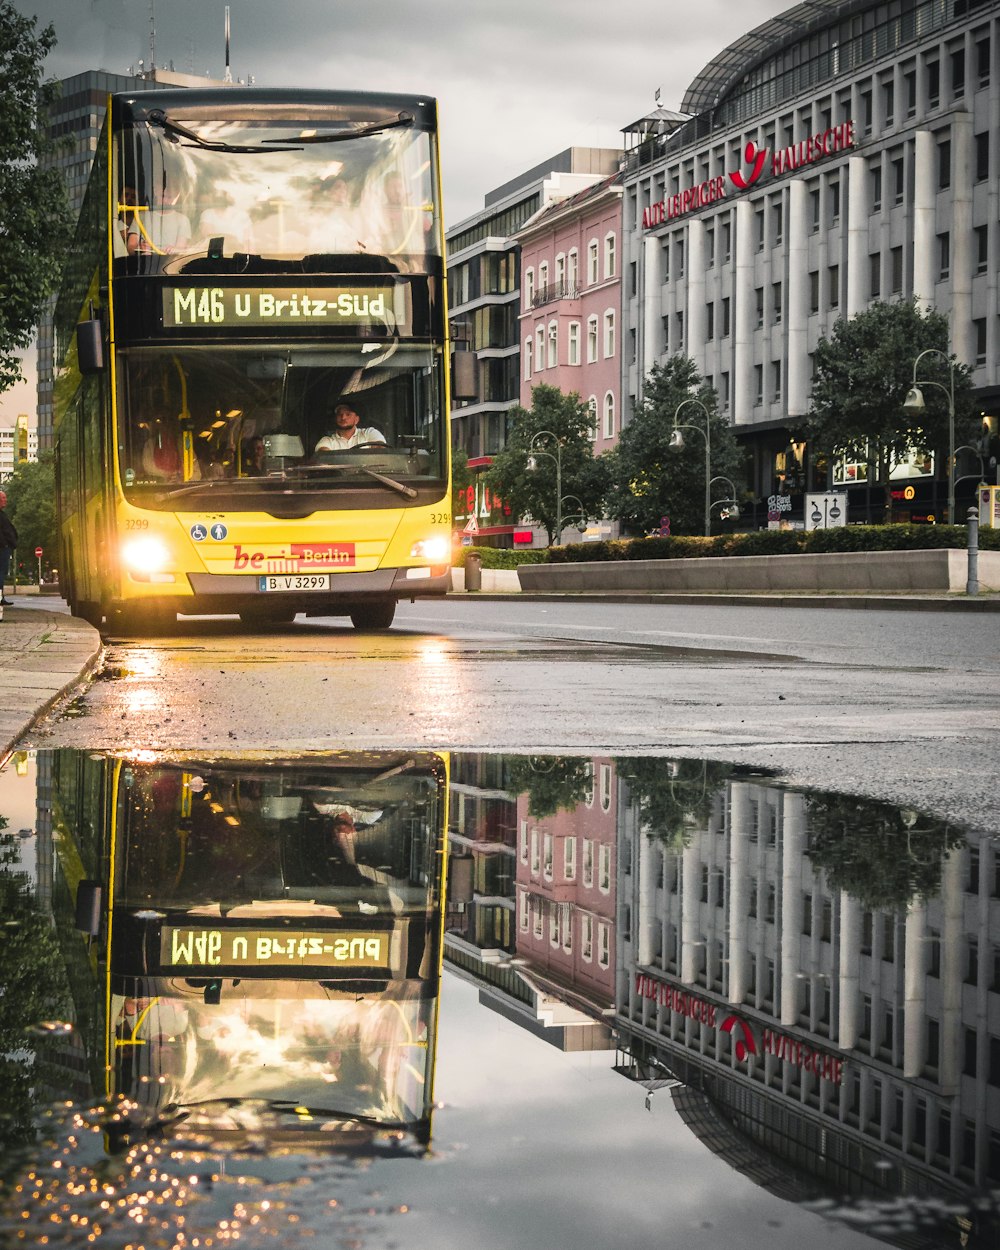 Autobus jaune se reflétant sur l’eau près de l’immeuble